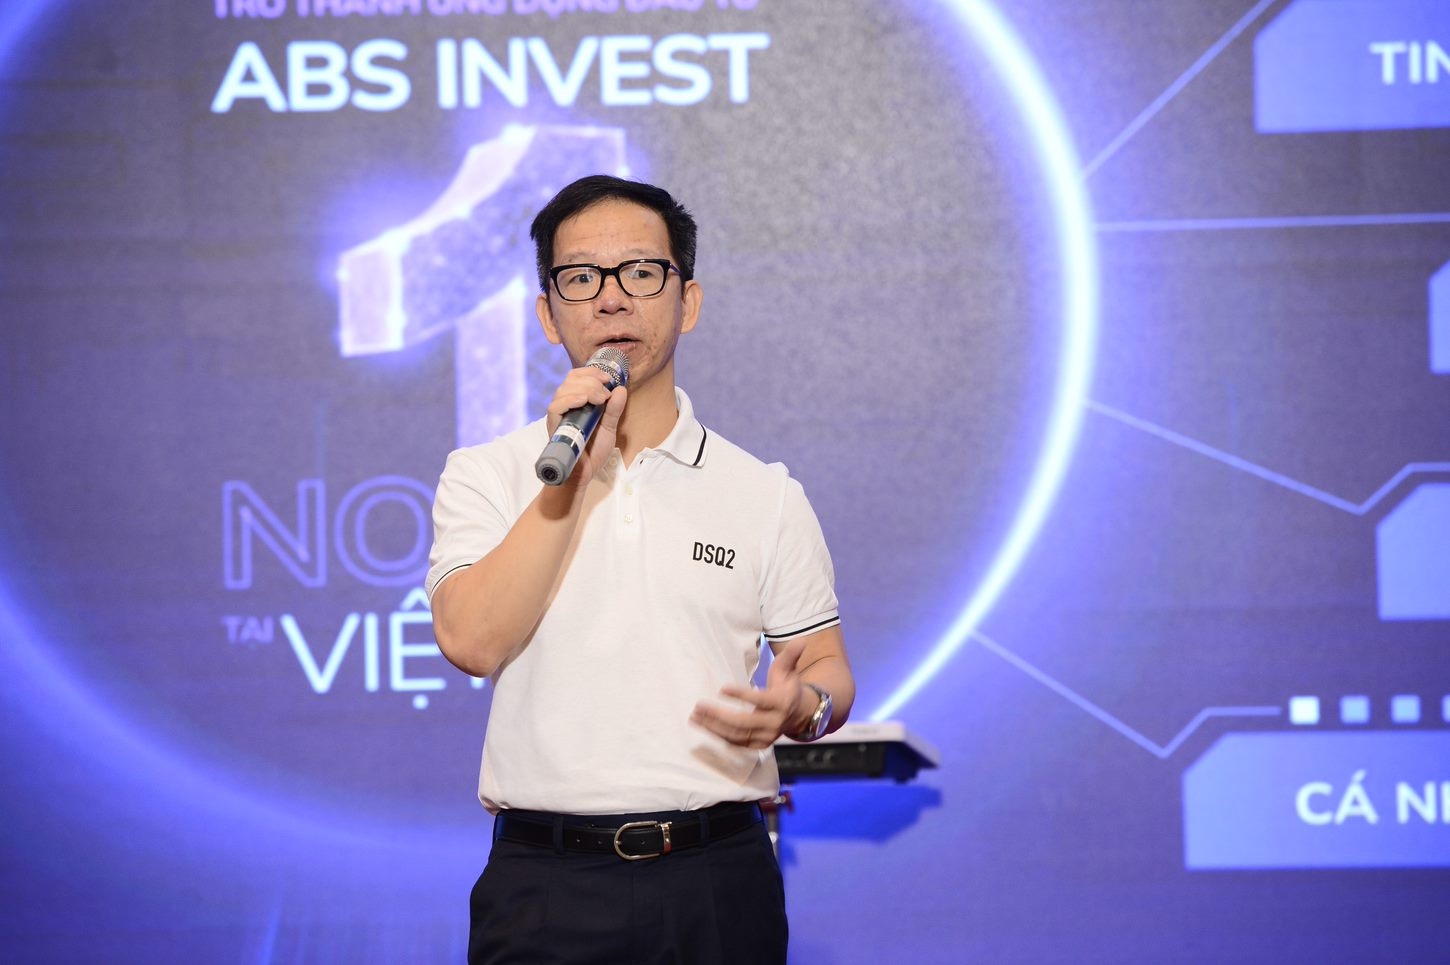 CEO Chứng khoán An Bình: Chúng tôi muốn khi nhắc đến đầu tư chứng khoán là khách hàng nhớ đến ABS